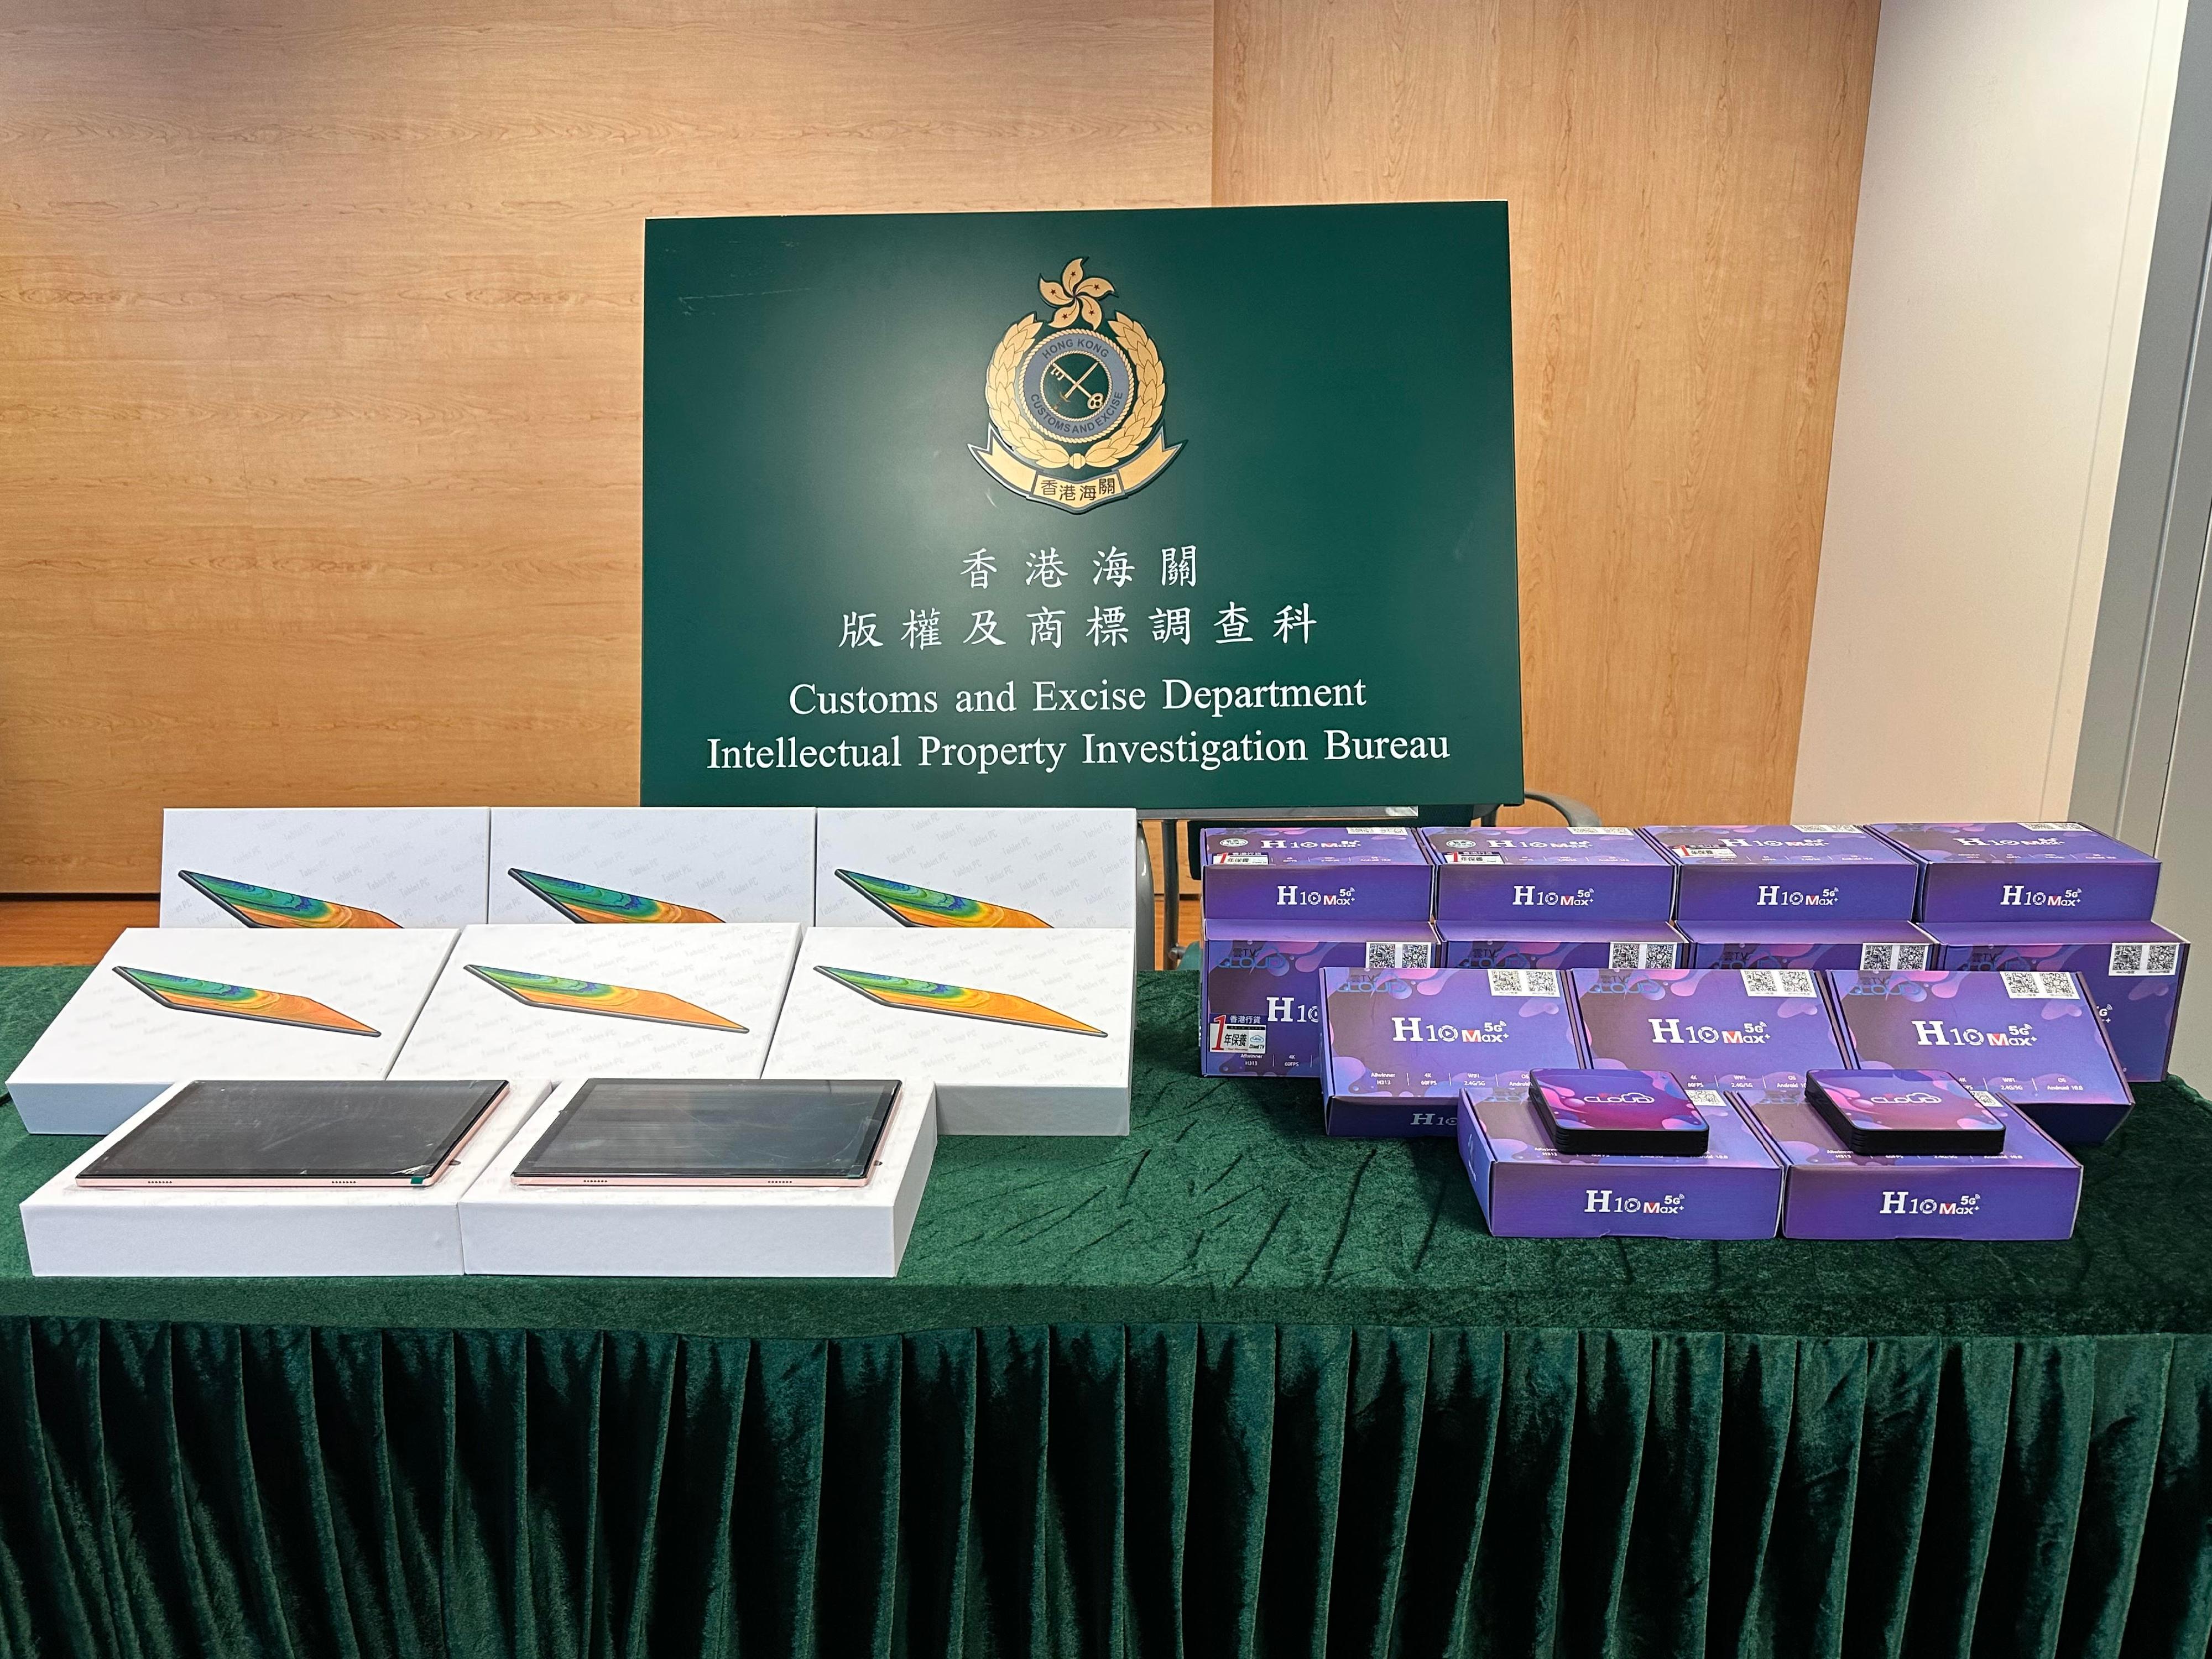 香港海關十月十九日採取執法行動，打擊規避收費電視頻道的侵權活動，於深水埗一間零售店鋪檢獲一批懷疑規避器件，並拘捕一名懷疑涉案男子。圖示部分檢獲的懷疑規避器件。